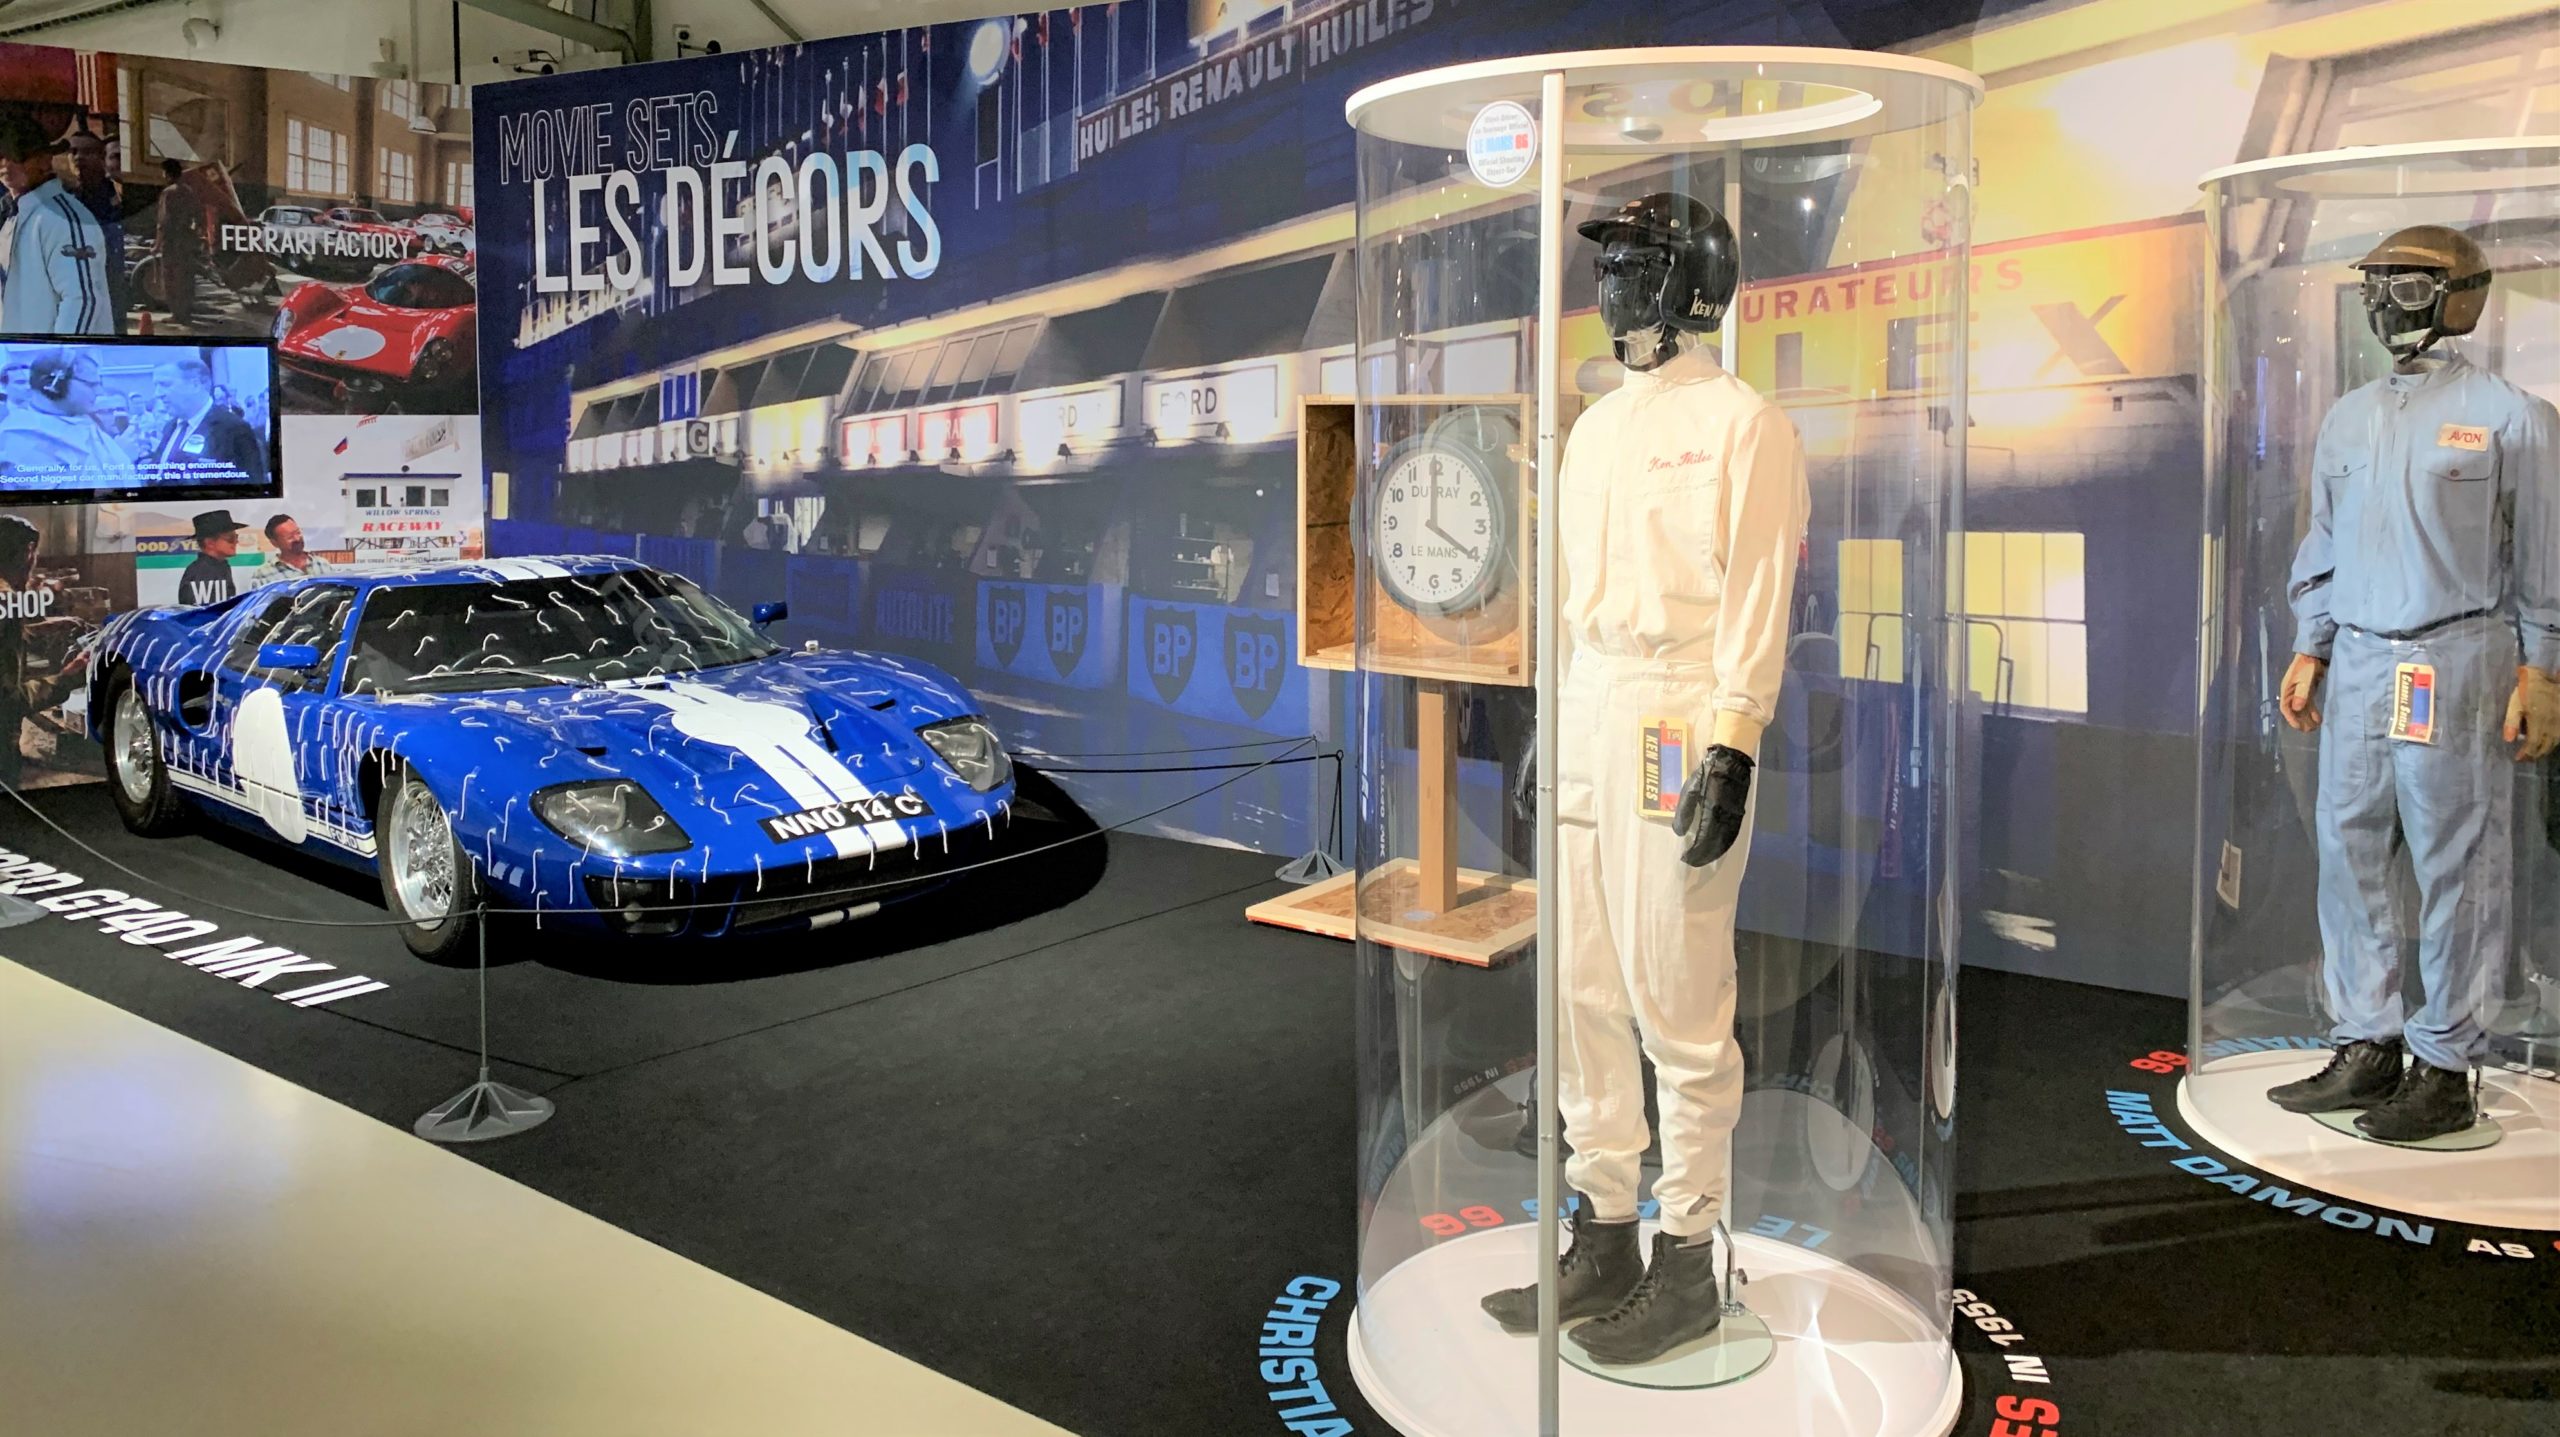 Original Outfit von Matt Damon aus der Neuverfilmung des Klassikers Le Mans